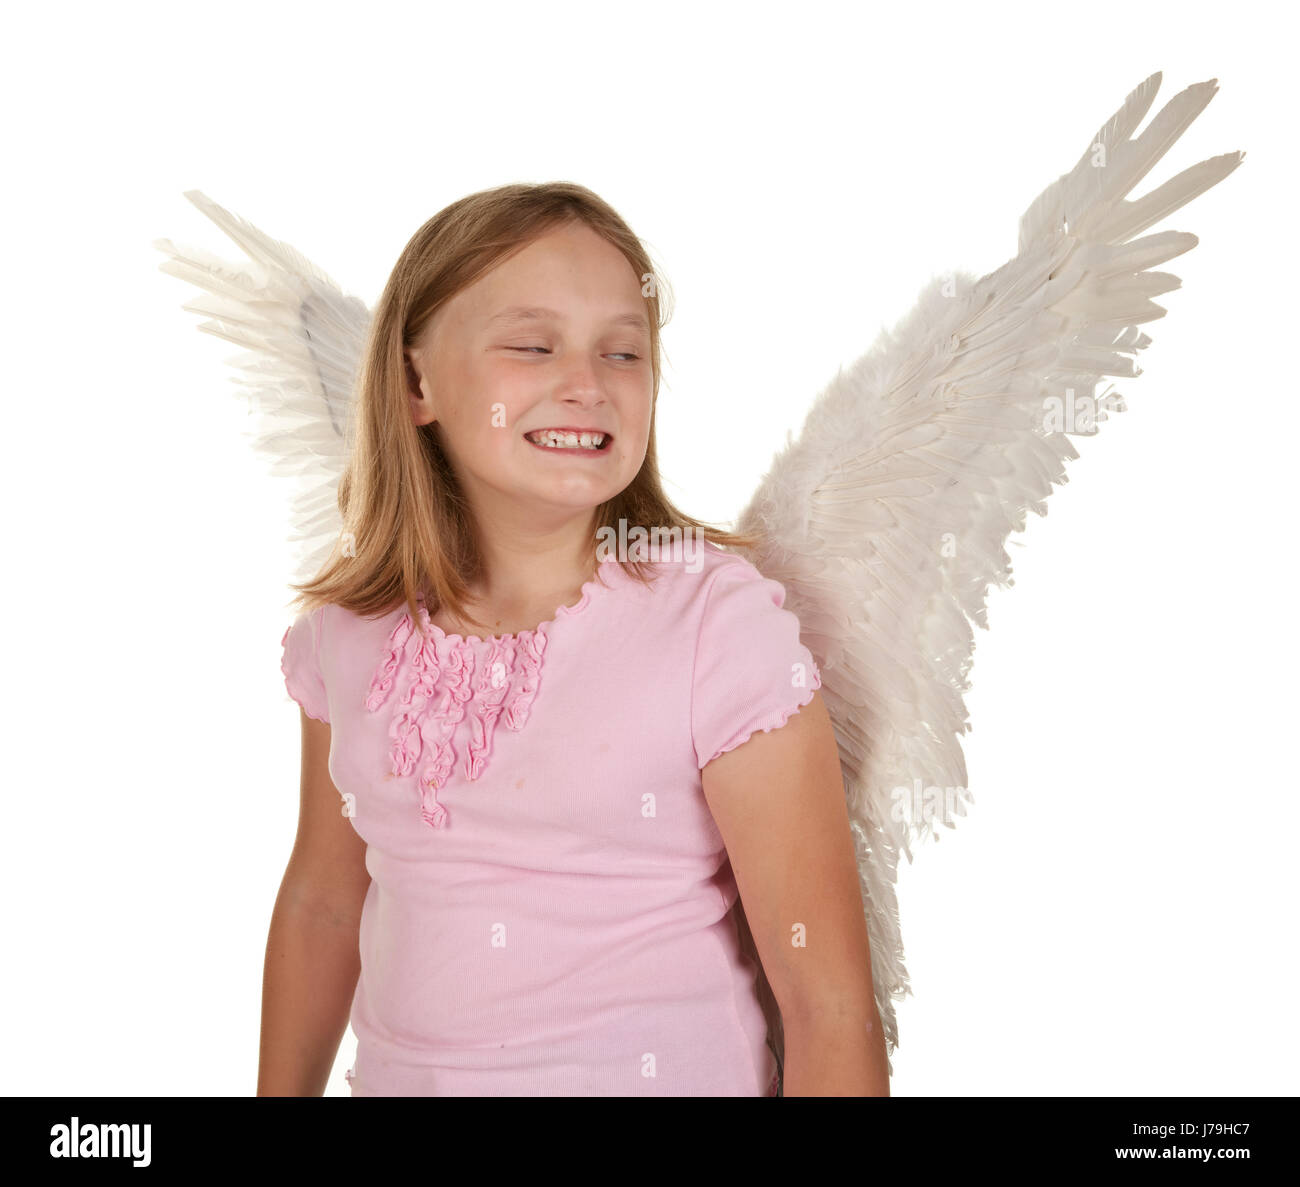 isolierte weibliche Person Engel Engel Flügel Kind Hintergrund Hintergrund weiß Stockfoto